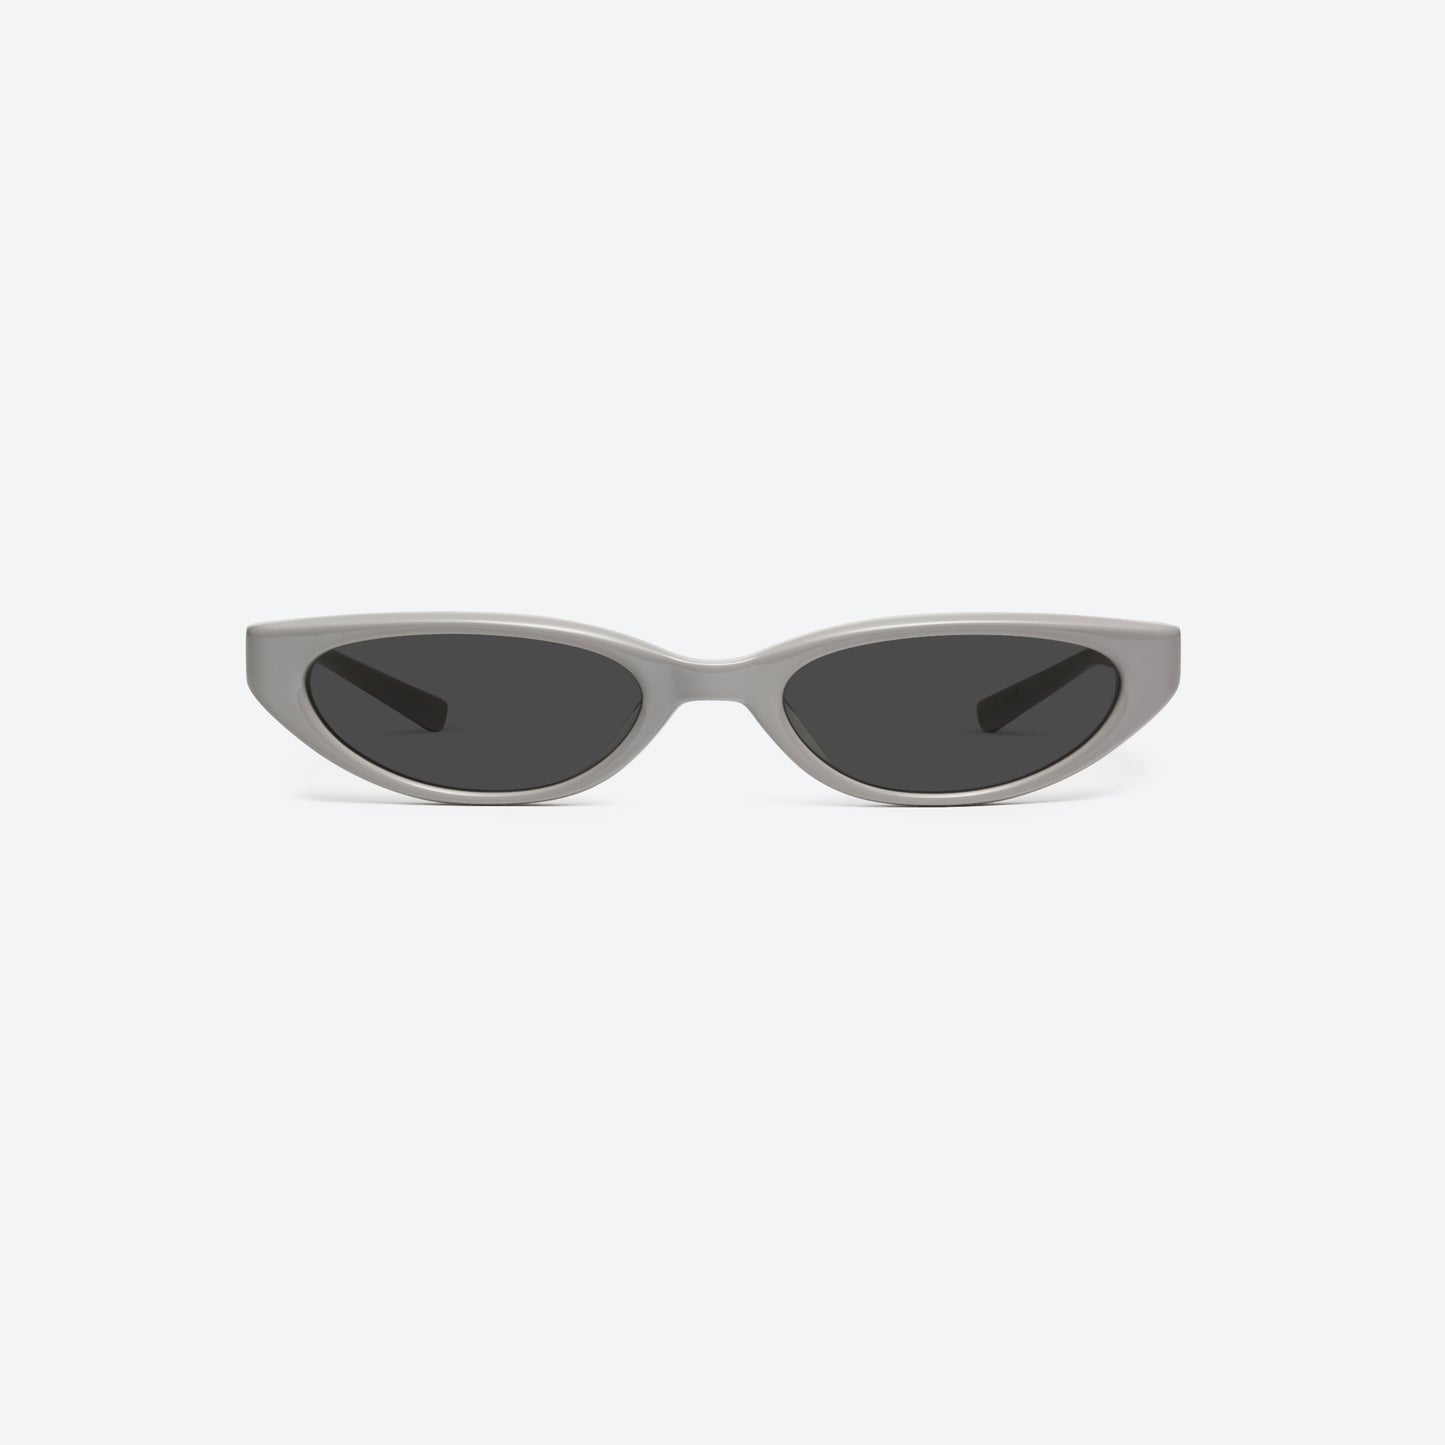 Maison Margiela x Gentle Monster Sunglasses MM108 G10